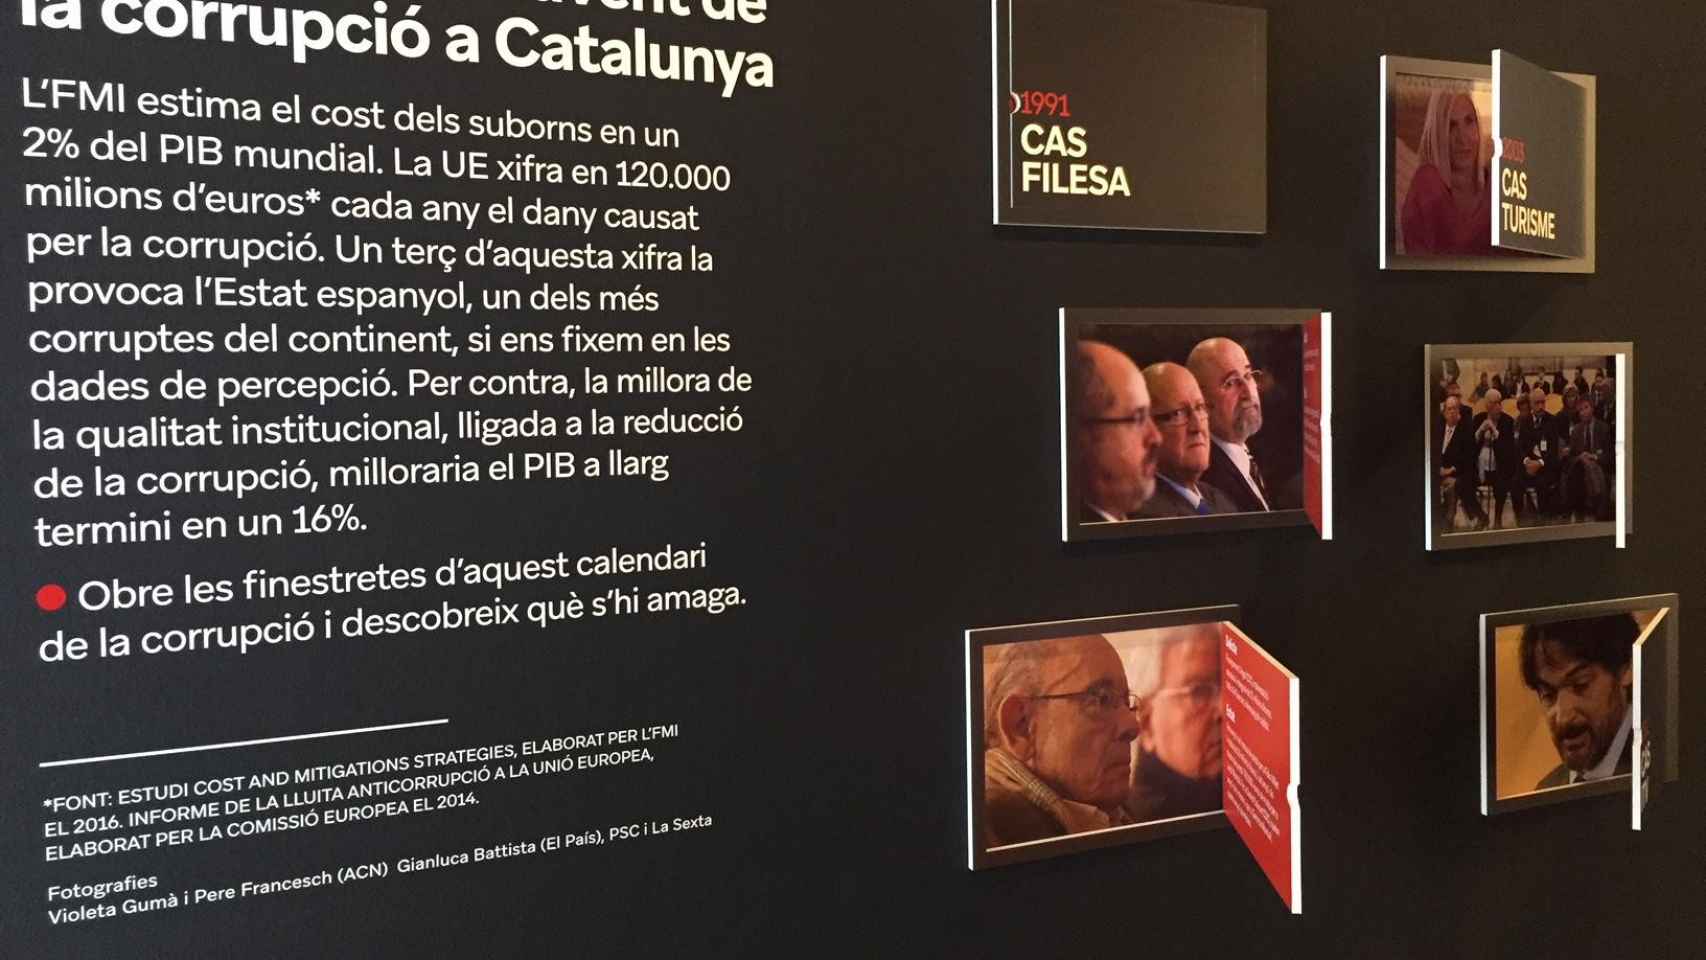 Imagen en la exposición anticorrupción con los distintos casos en Cataluña / CG